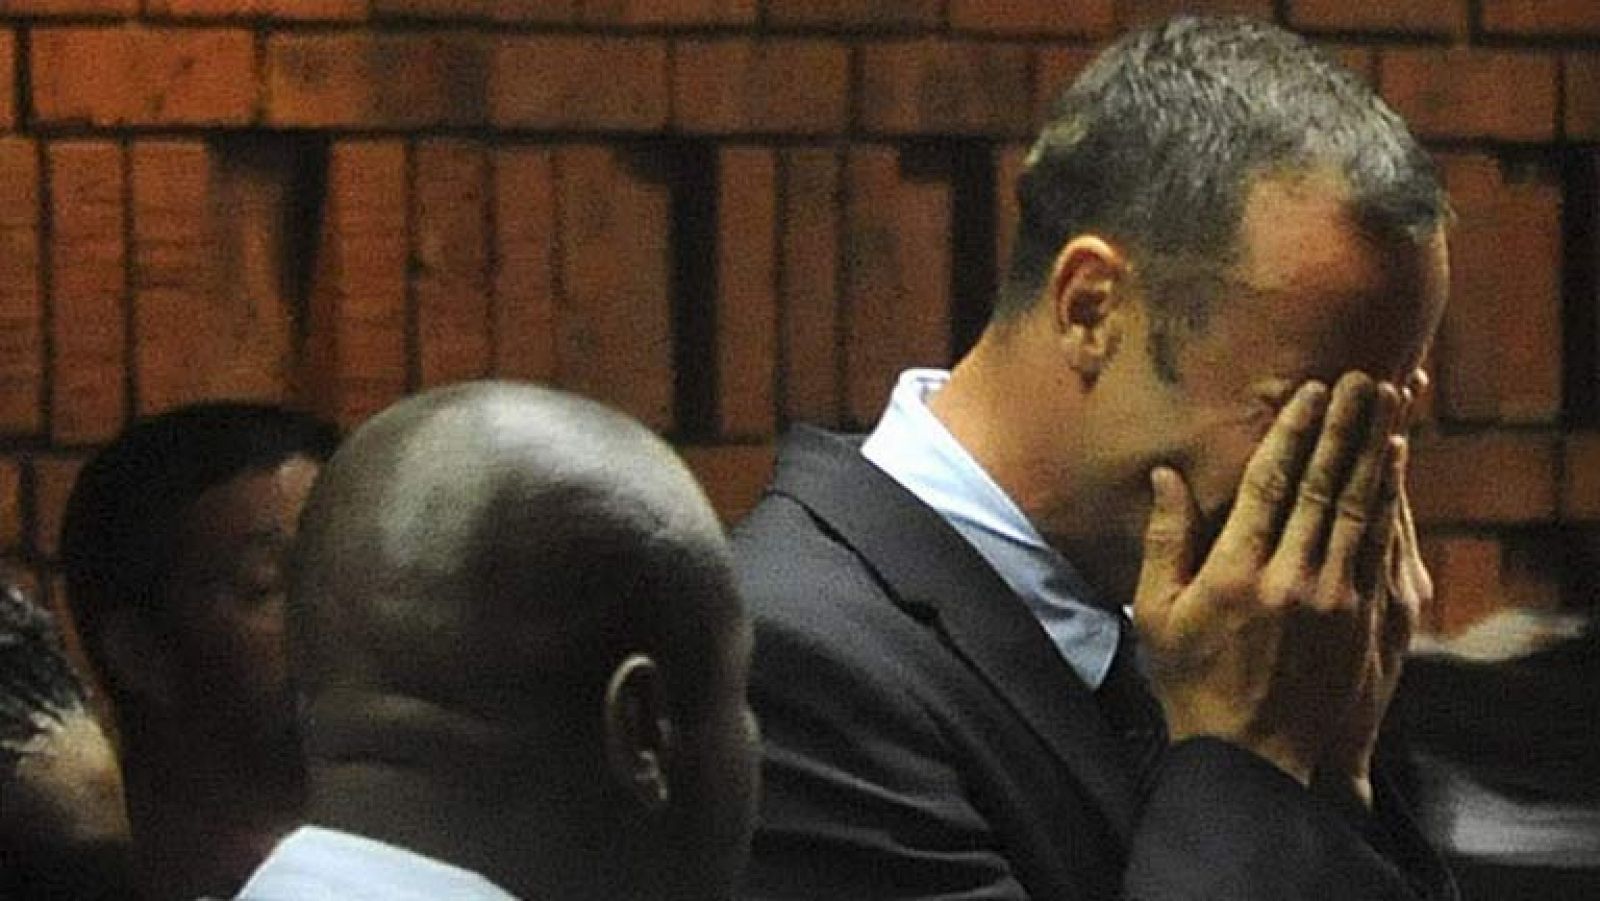 El atleta olímpico y paralímpico sudafricano Oscar Pistorius ha roto a llorar ante el Tribunal de la Magistratura de Pretoria, cuando éste le ha inculpado oficialmente por el asesinato de su pareja, la modelo de 29 años Reeva Steenkamp.